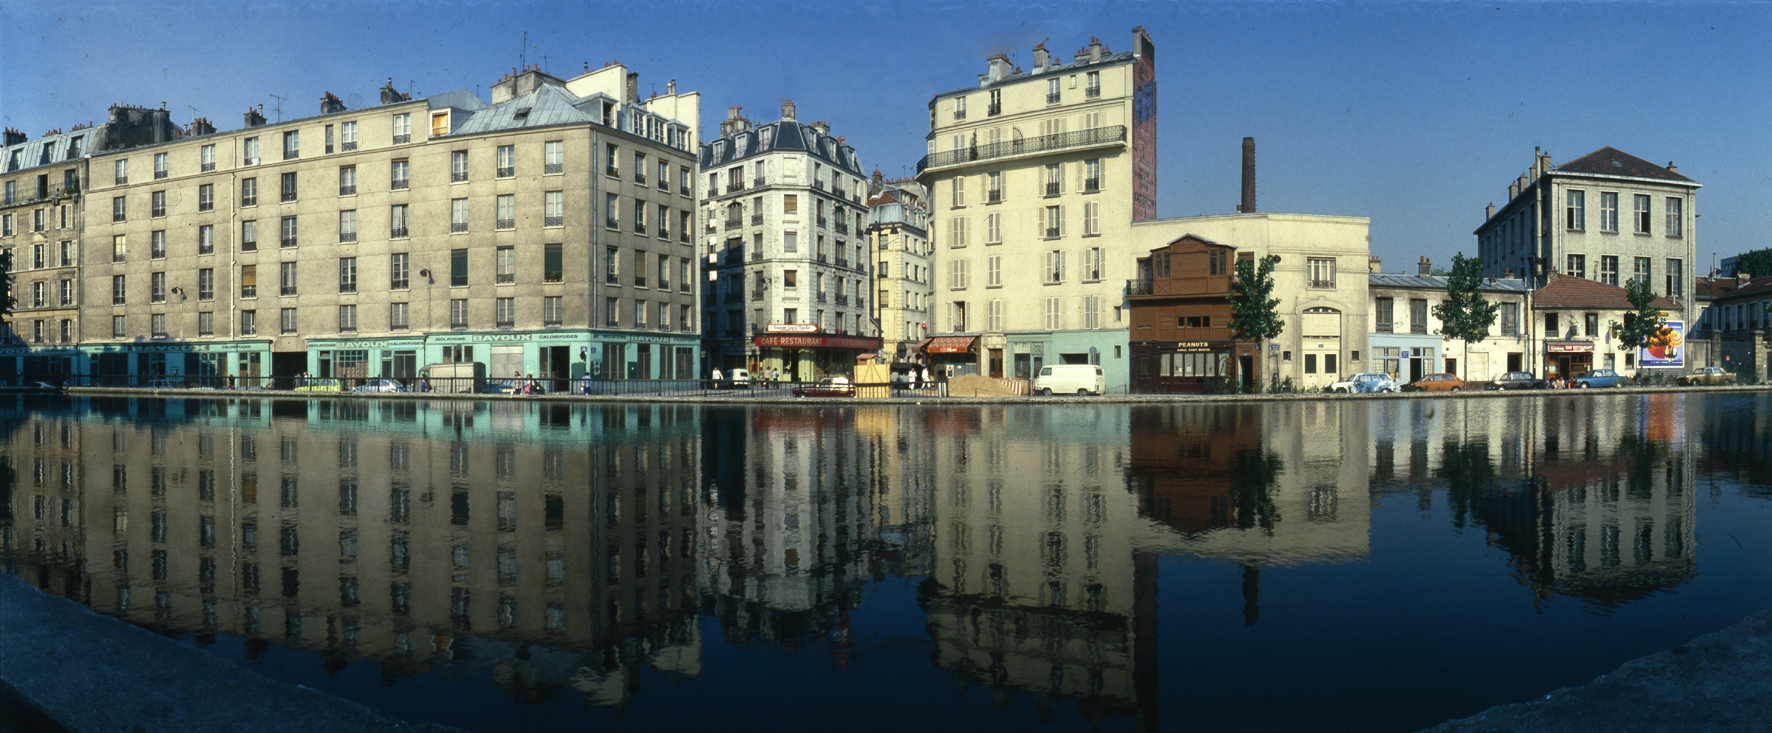 Paris Canal St. Martin 1979, Panorama mit Camera Horizont